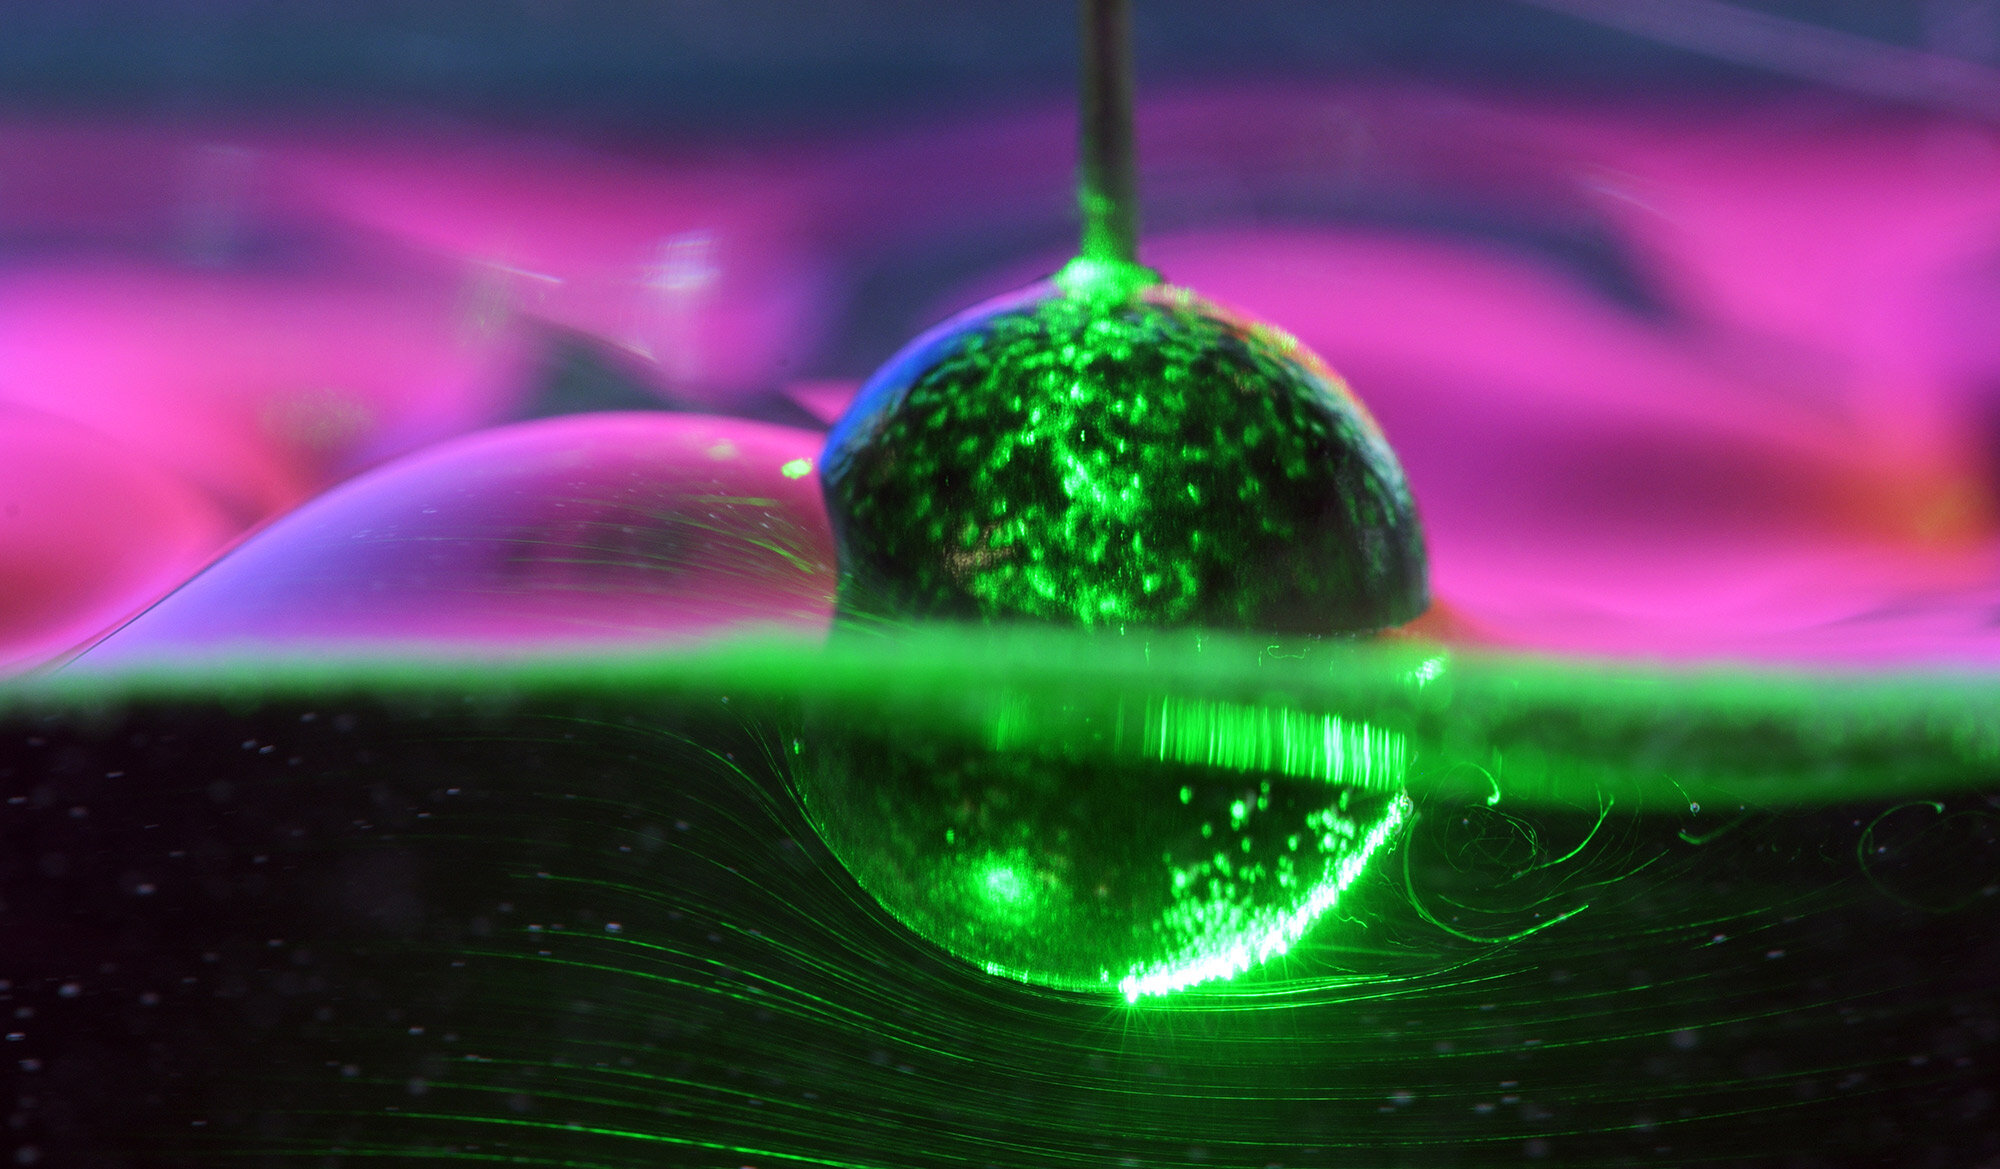 Des chercheurs en dynamique des fluides mettent en lumière la façon dont les objets partiellement immergés subissent la traînée